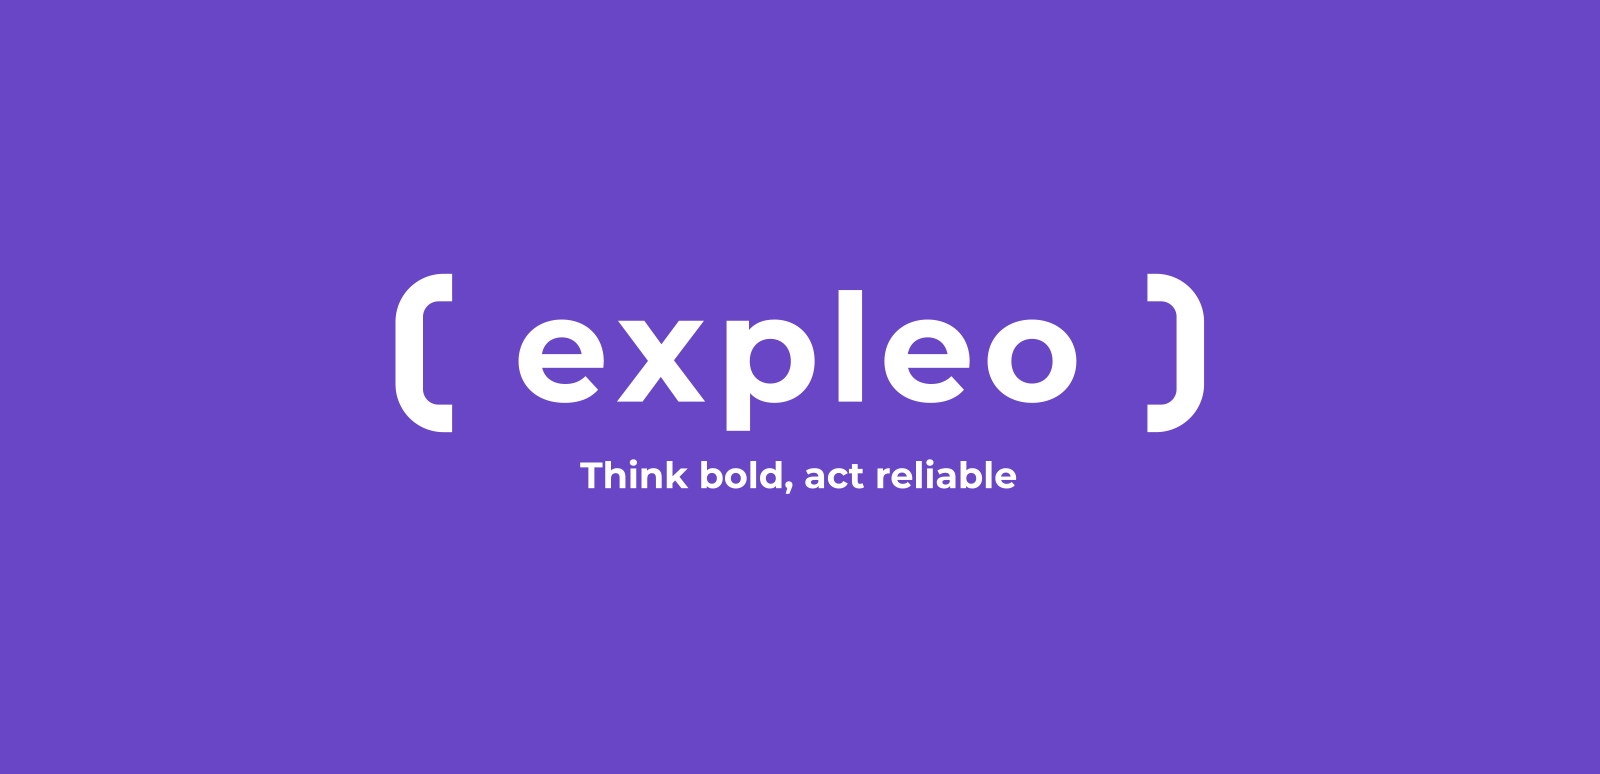 expleo logo and tagline